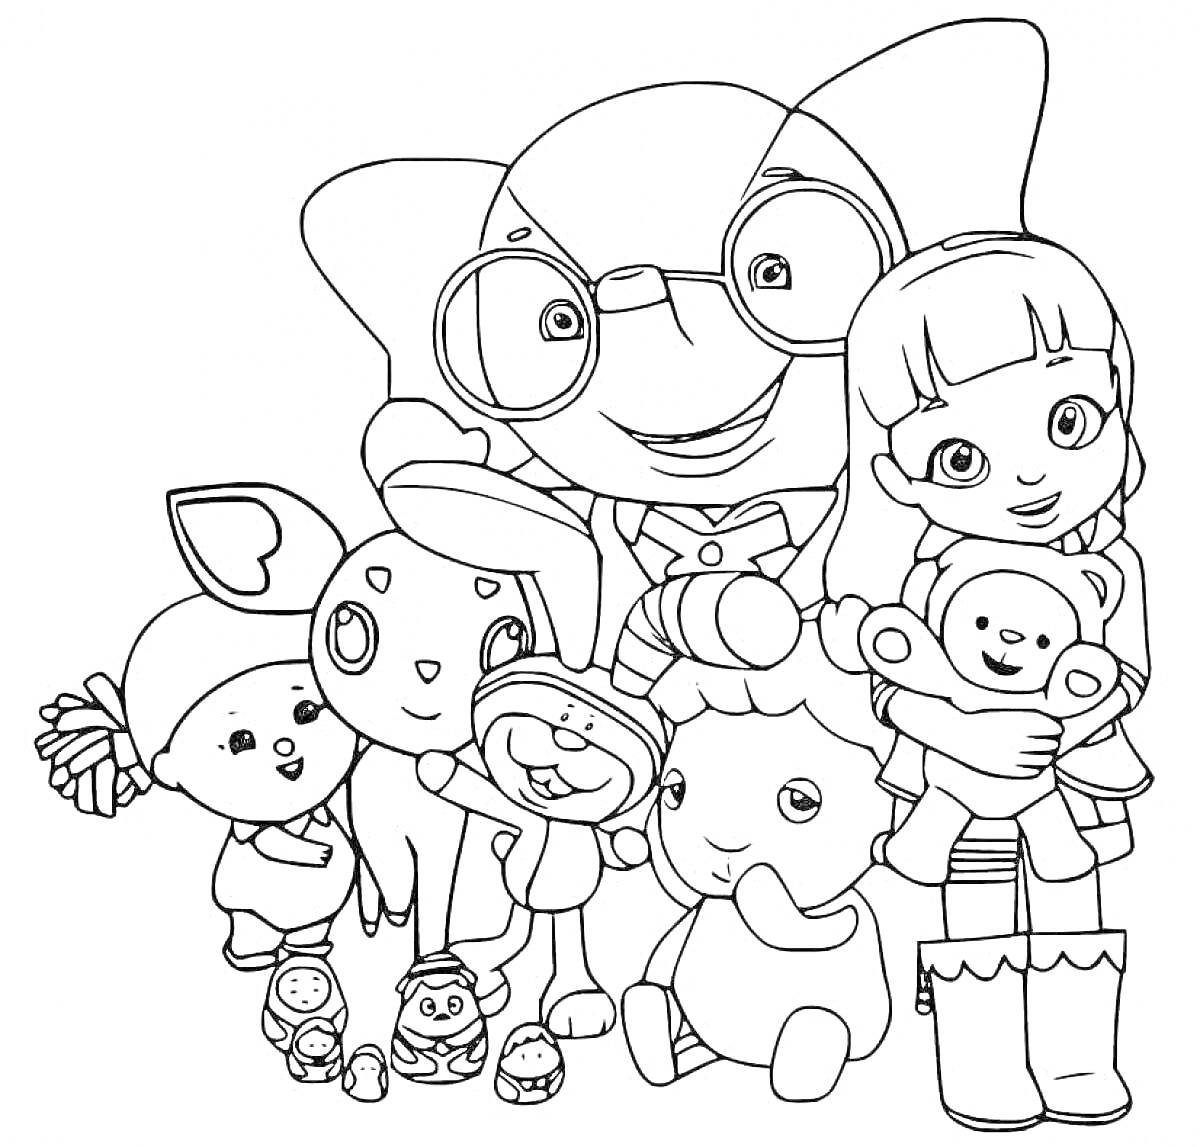 Радужные друзья: мальчик в очках, девочка с медвежонком, игрушечный кролик, игрушечная овечка, кукла с капюшоном, резиновые сапоги, маленькие игрушки